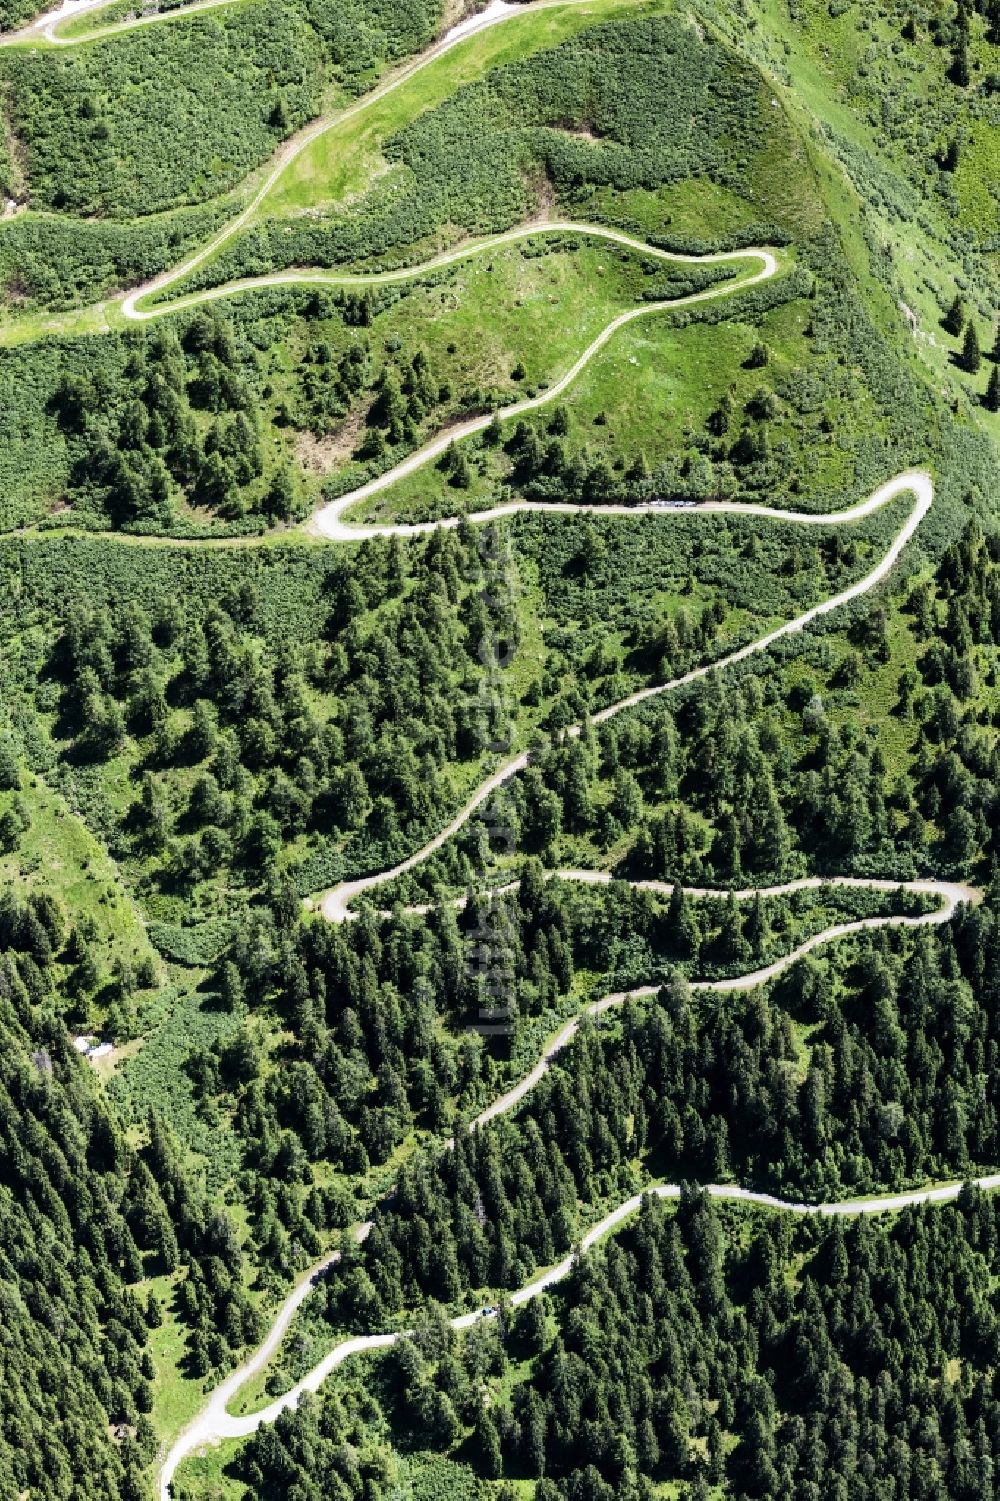 Mittersill von oben - Serpentinenförmiger Kurvenverlauf einer Straßenführung in Mittersill in Salzburg, Österreich